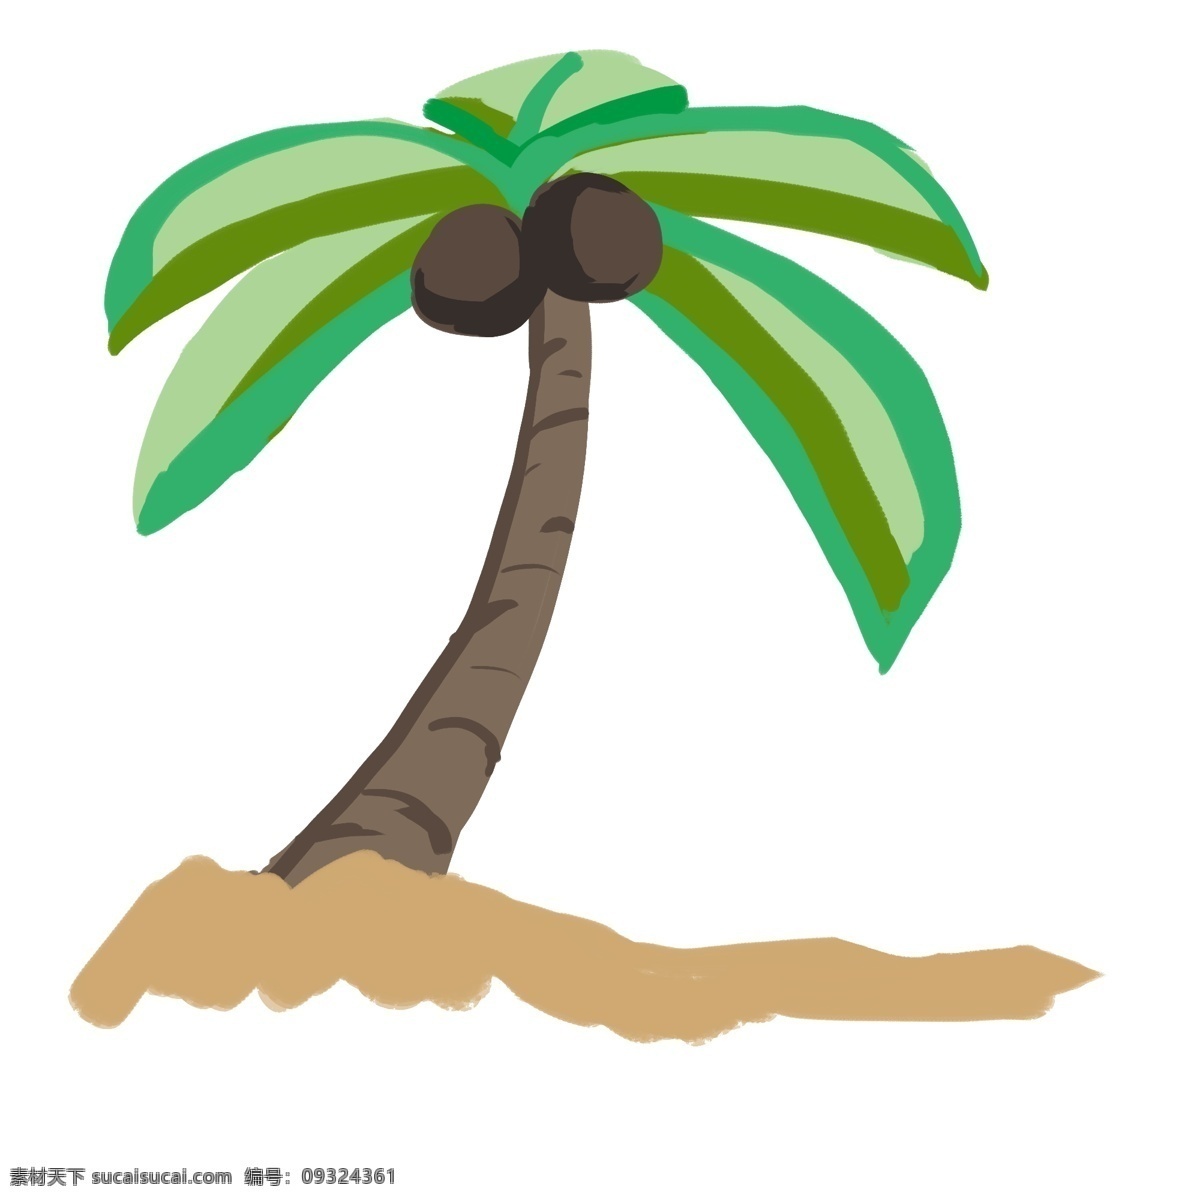 椰子树绿 绿色 椰树 可爱 简洁 手绘 卡通